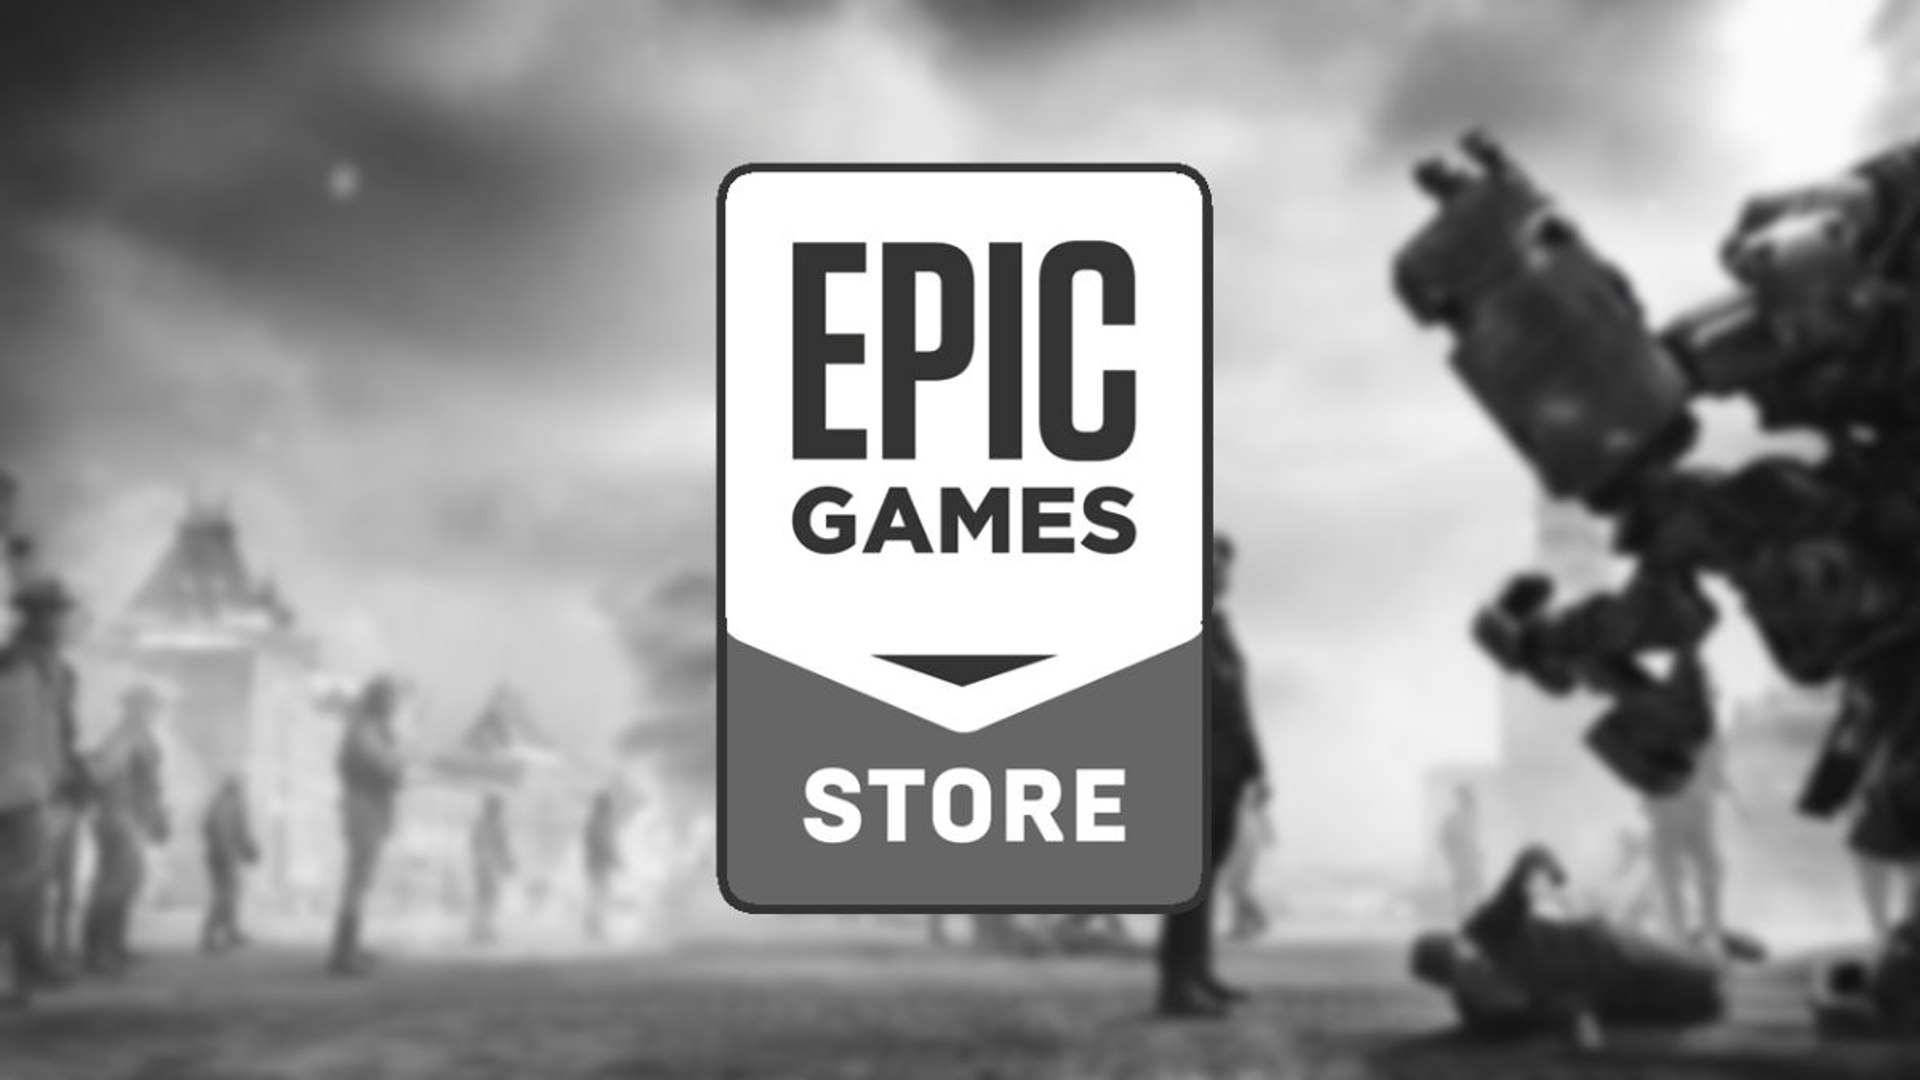 epic games store - Página 3 de 5 - Olhar Digital